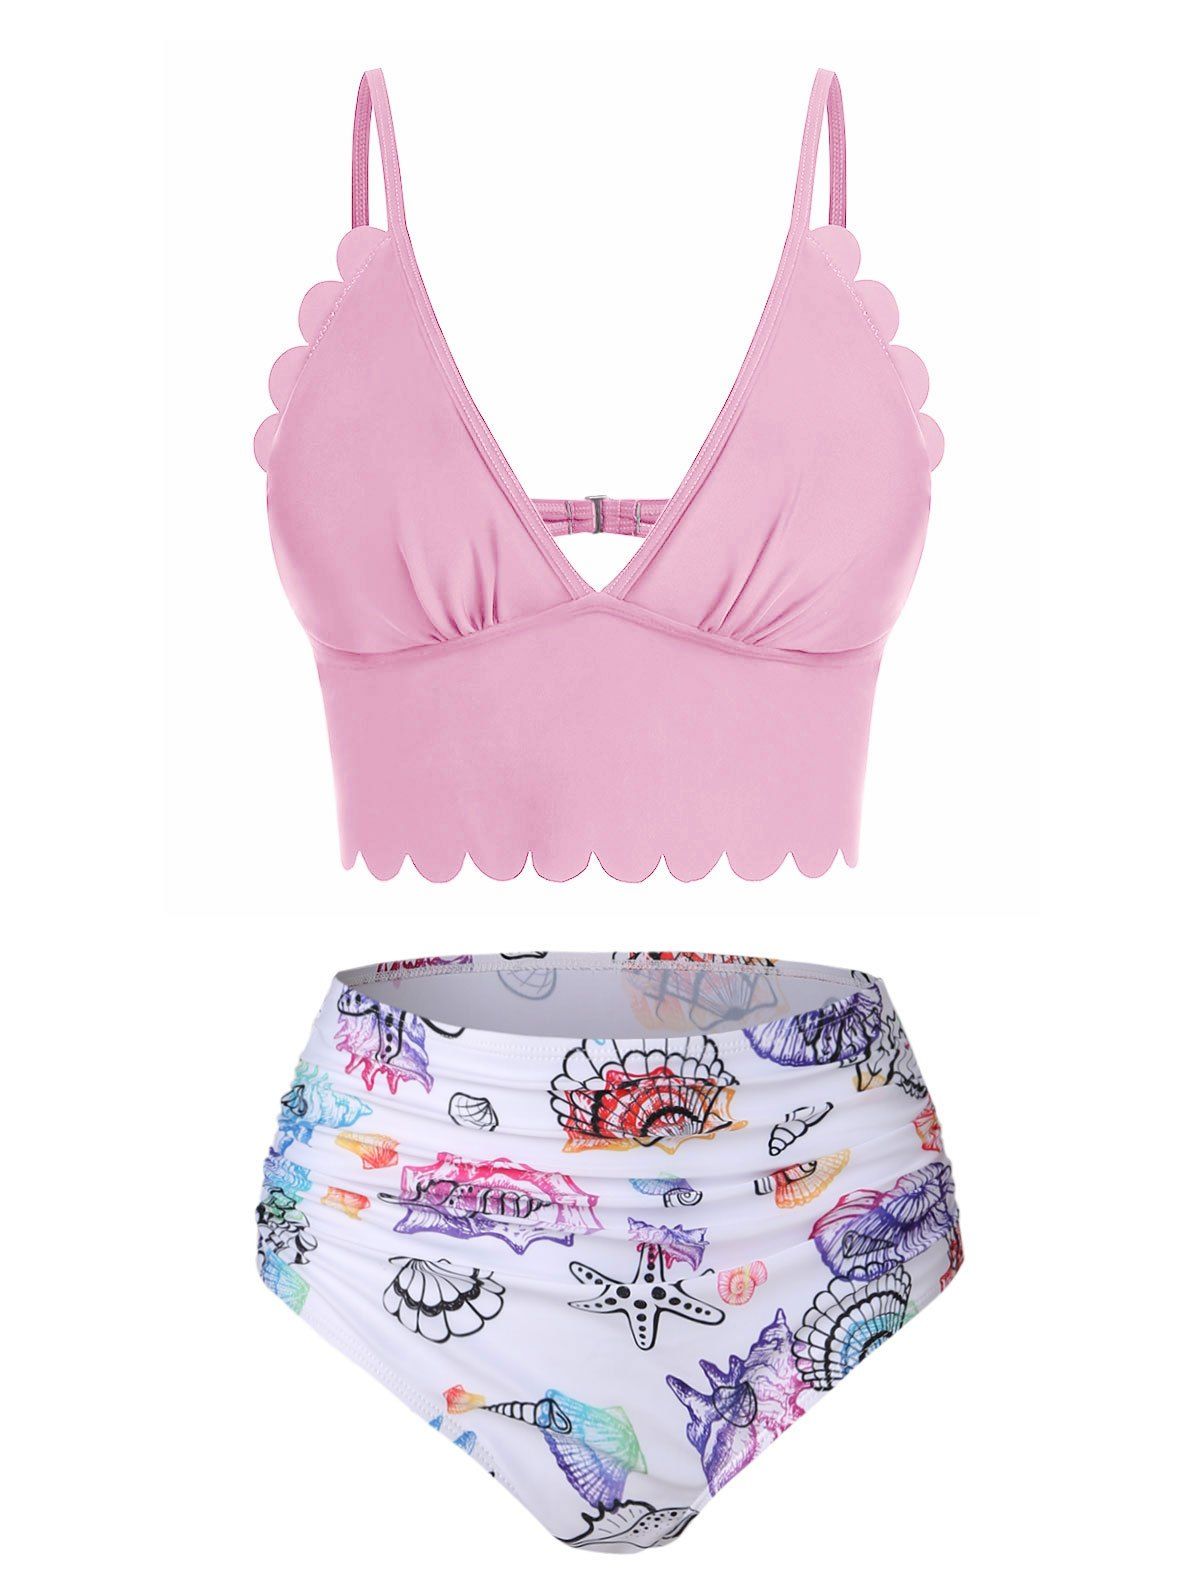 Shell Starfish Print Ruched Padded Bikini Set - LIGHT PINK 3XL